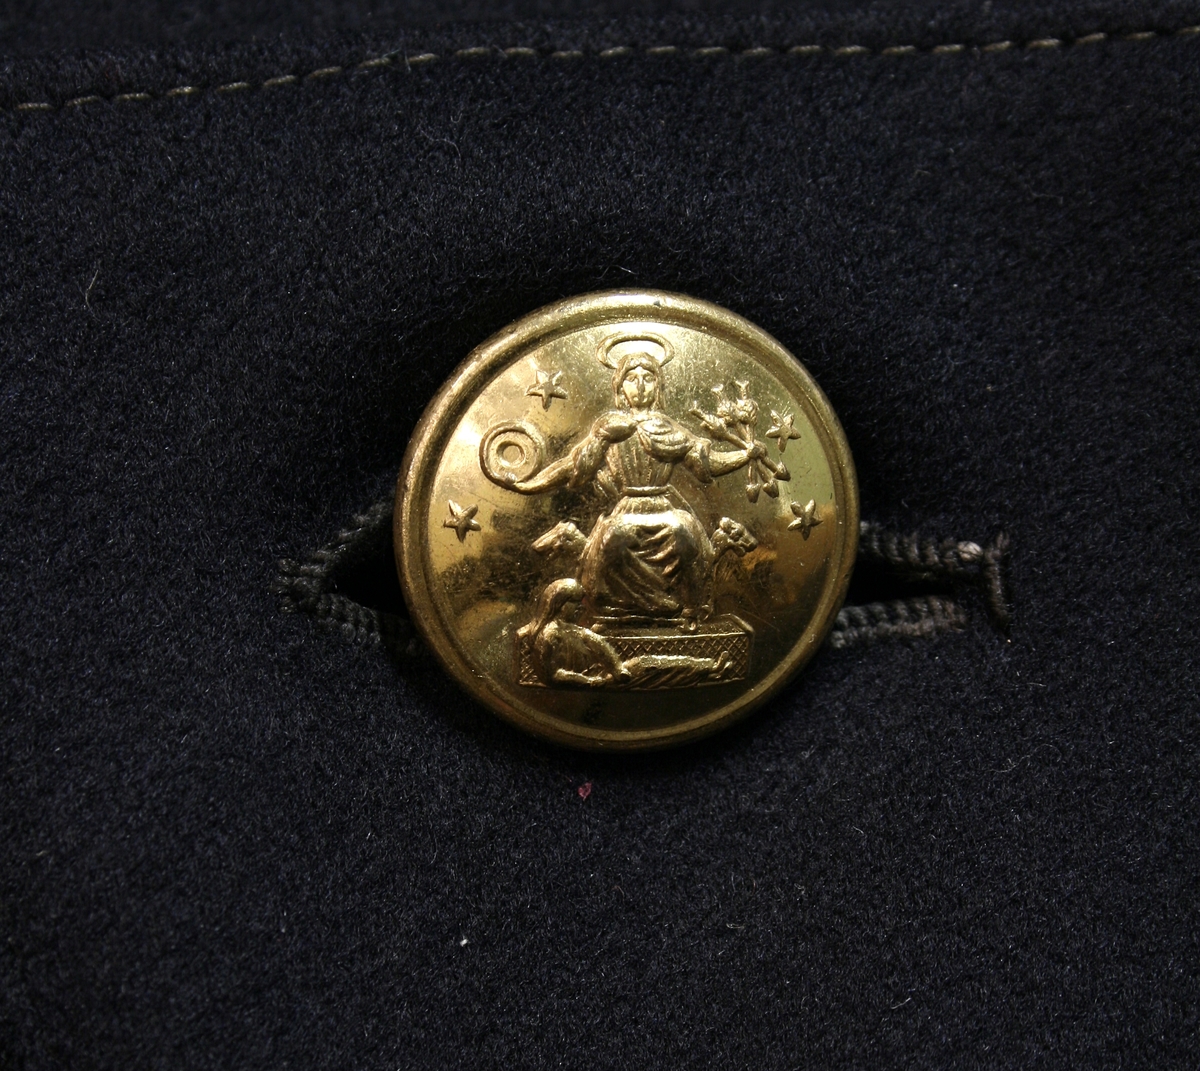 Modell 1877 (?) for konstabel, 
dobbelspent med 7 knapper i hver rad, 3 knapper bak på hver av frakkeskjørtene. På den opprettstående kragen konstabelnummeret 9 i messing og en stjerne. 

Buksen har rød passpoil. Det er uvisst om denne hører til.